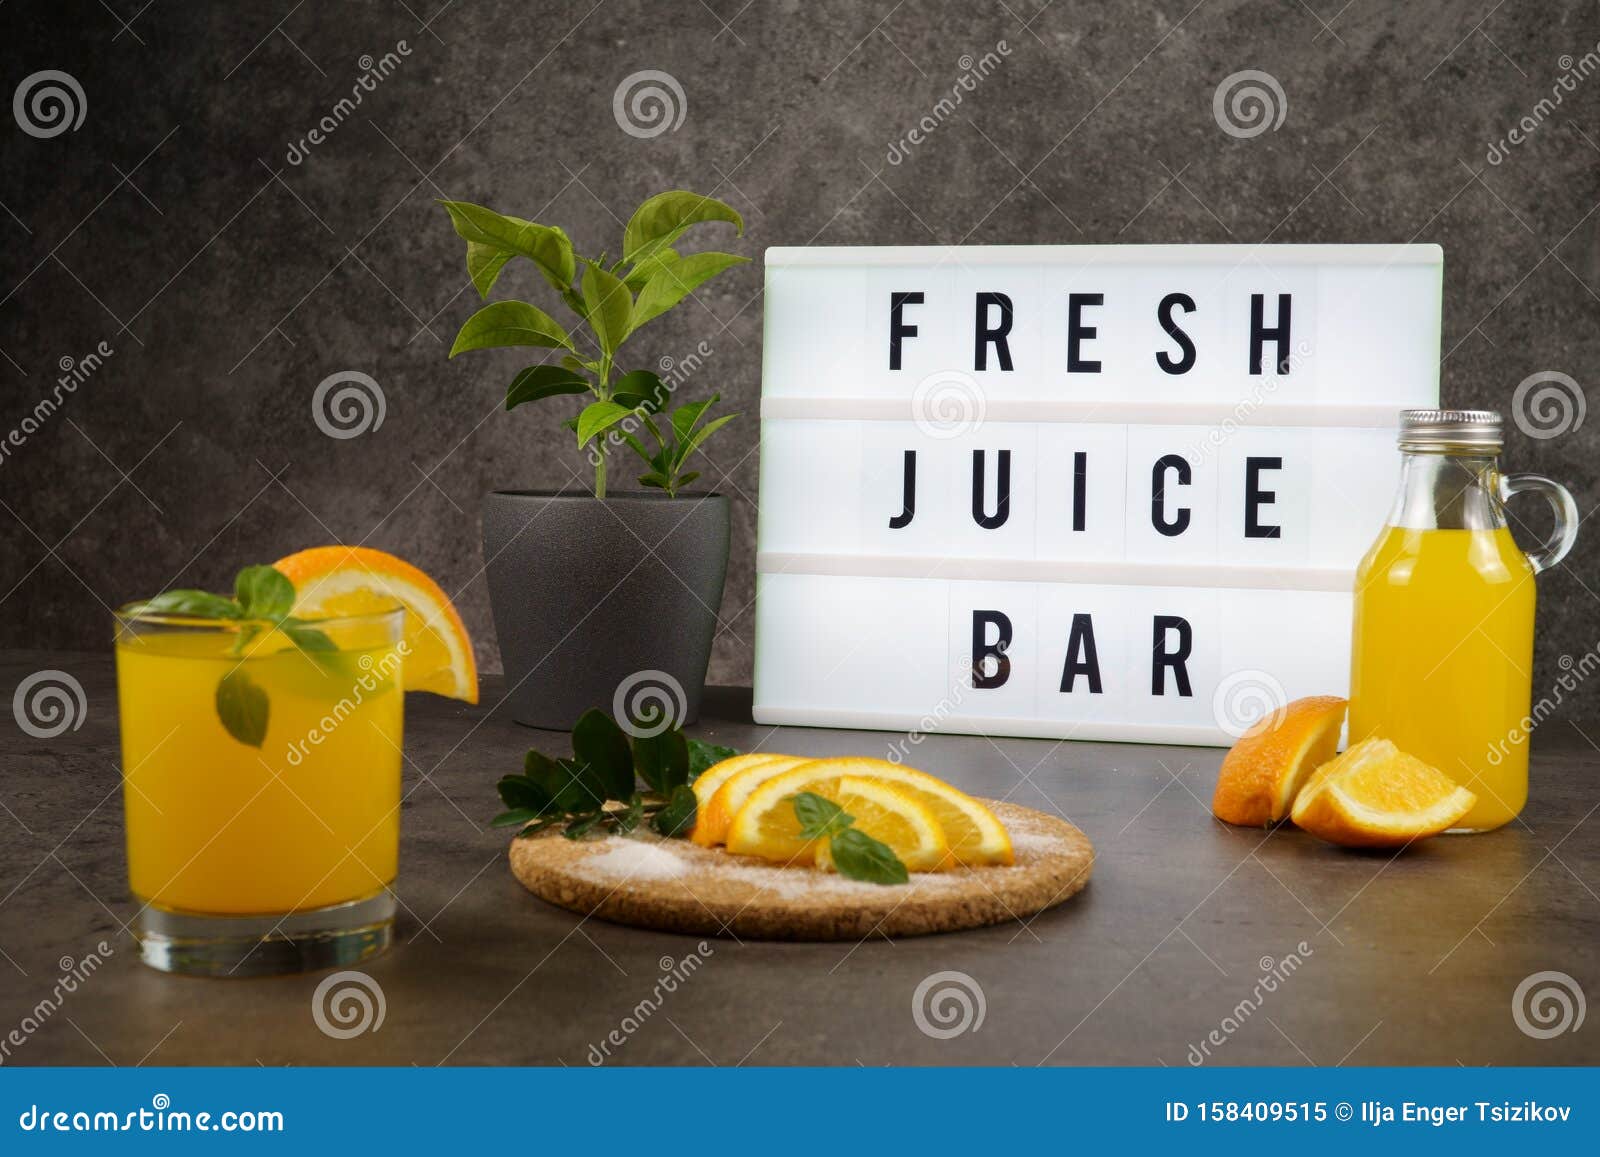 Fresh Juice Bar Concept. Oranges with Fresh Orange Juice Stock Image -  Image of celebration, breakfast: 158409515